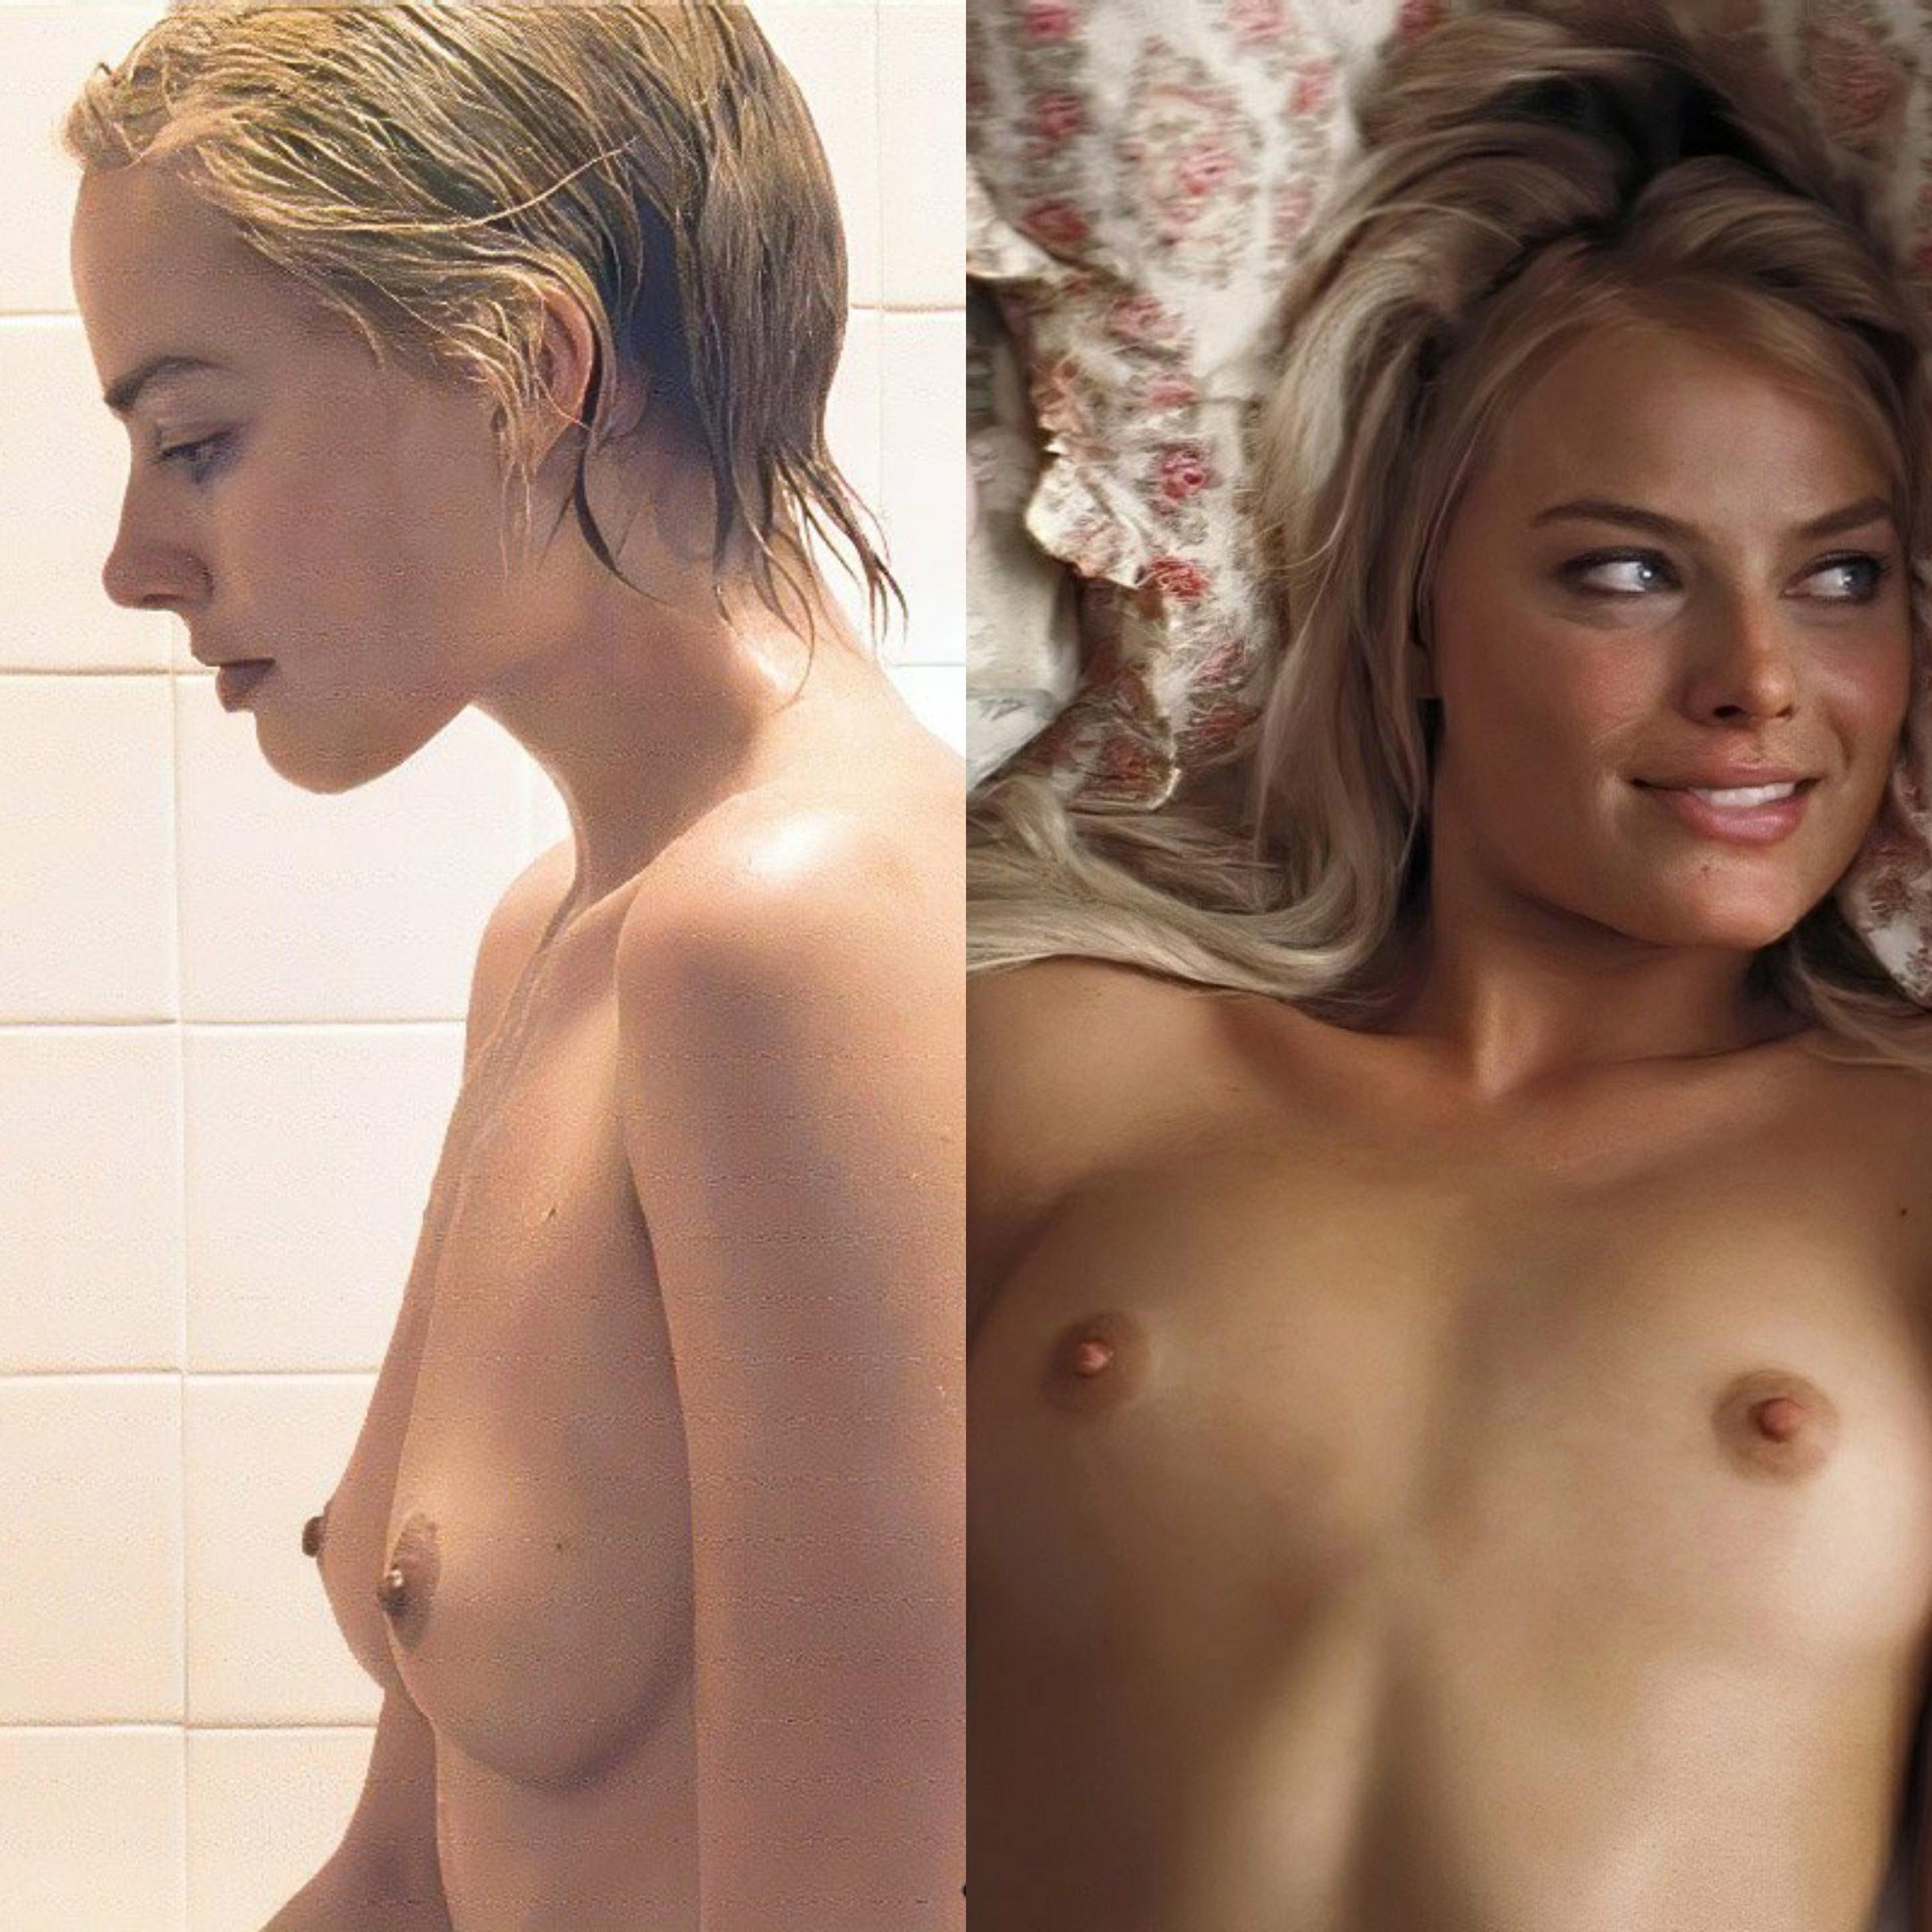 Margot naked